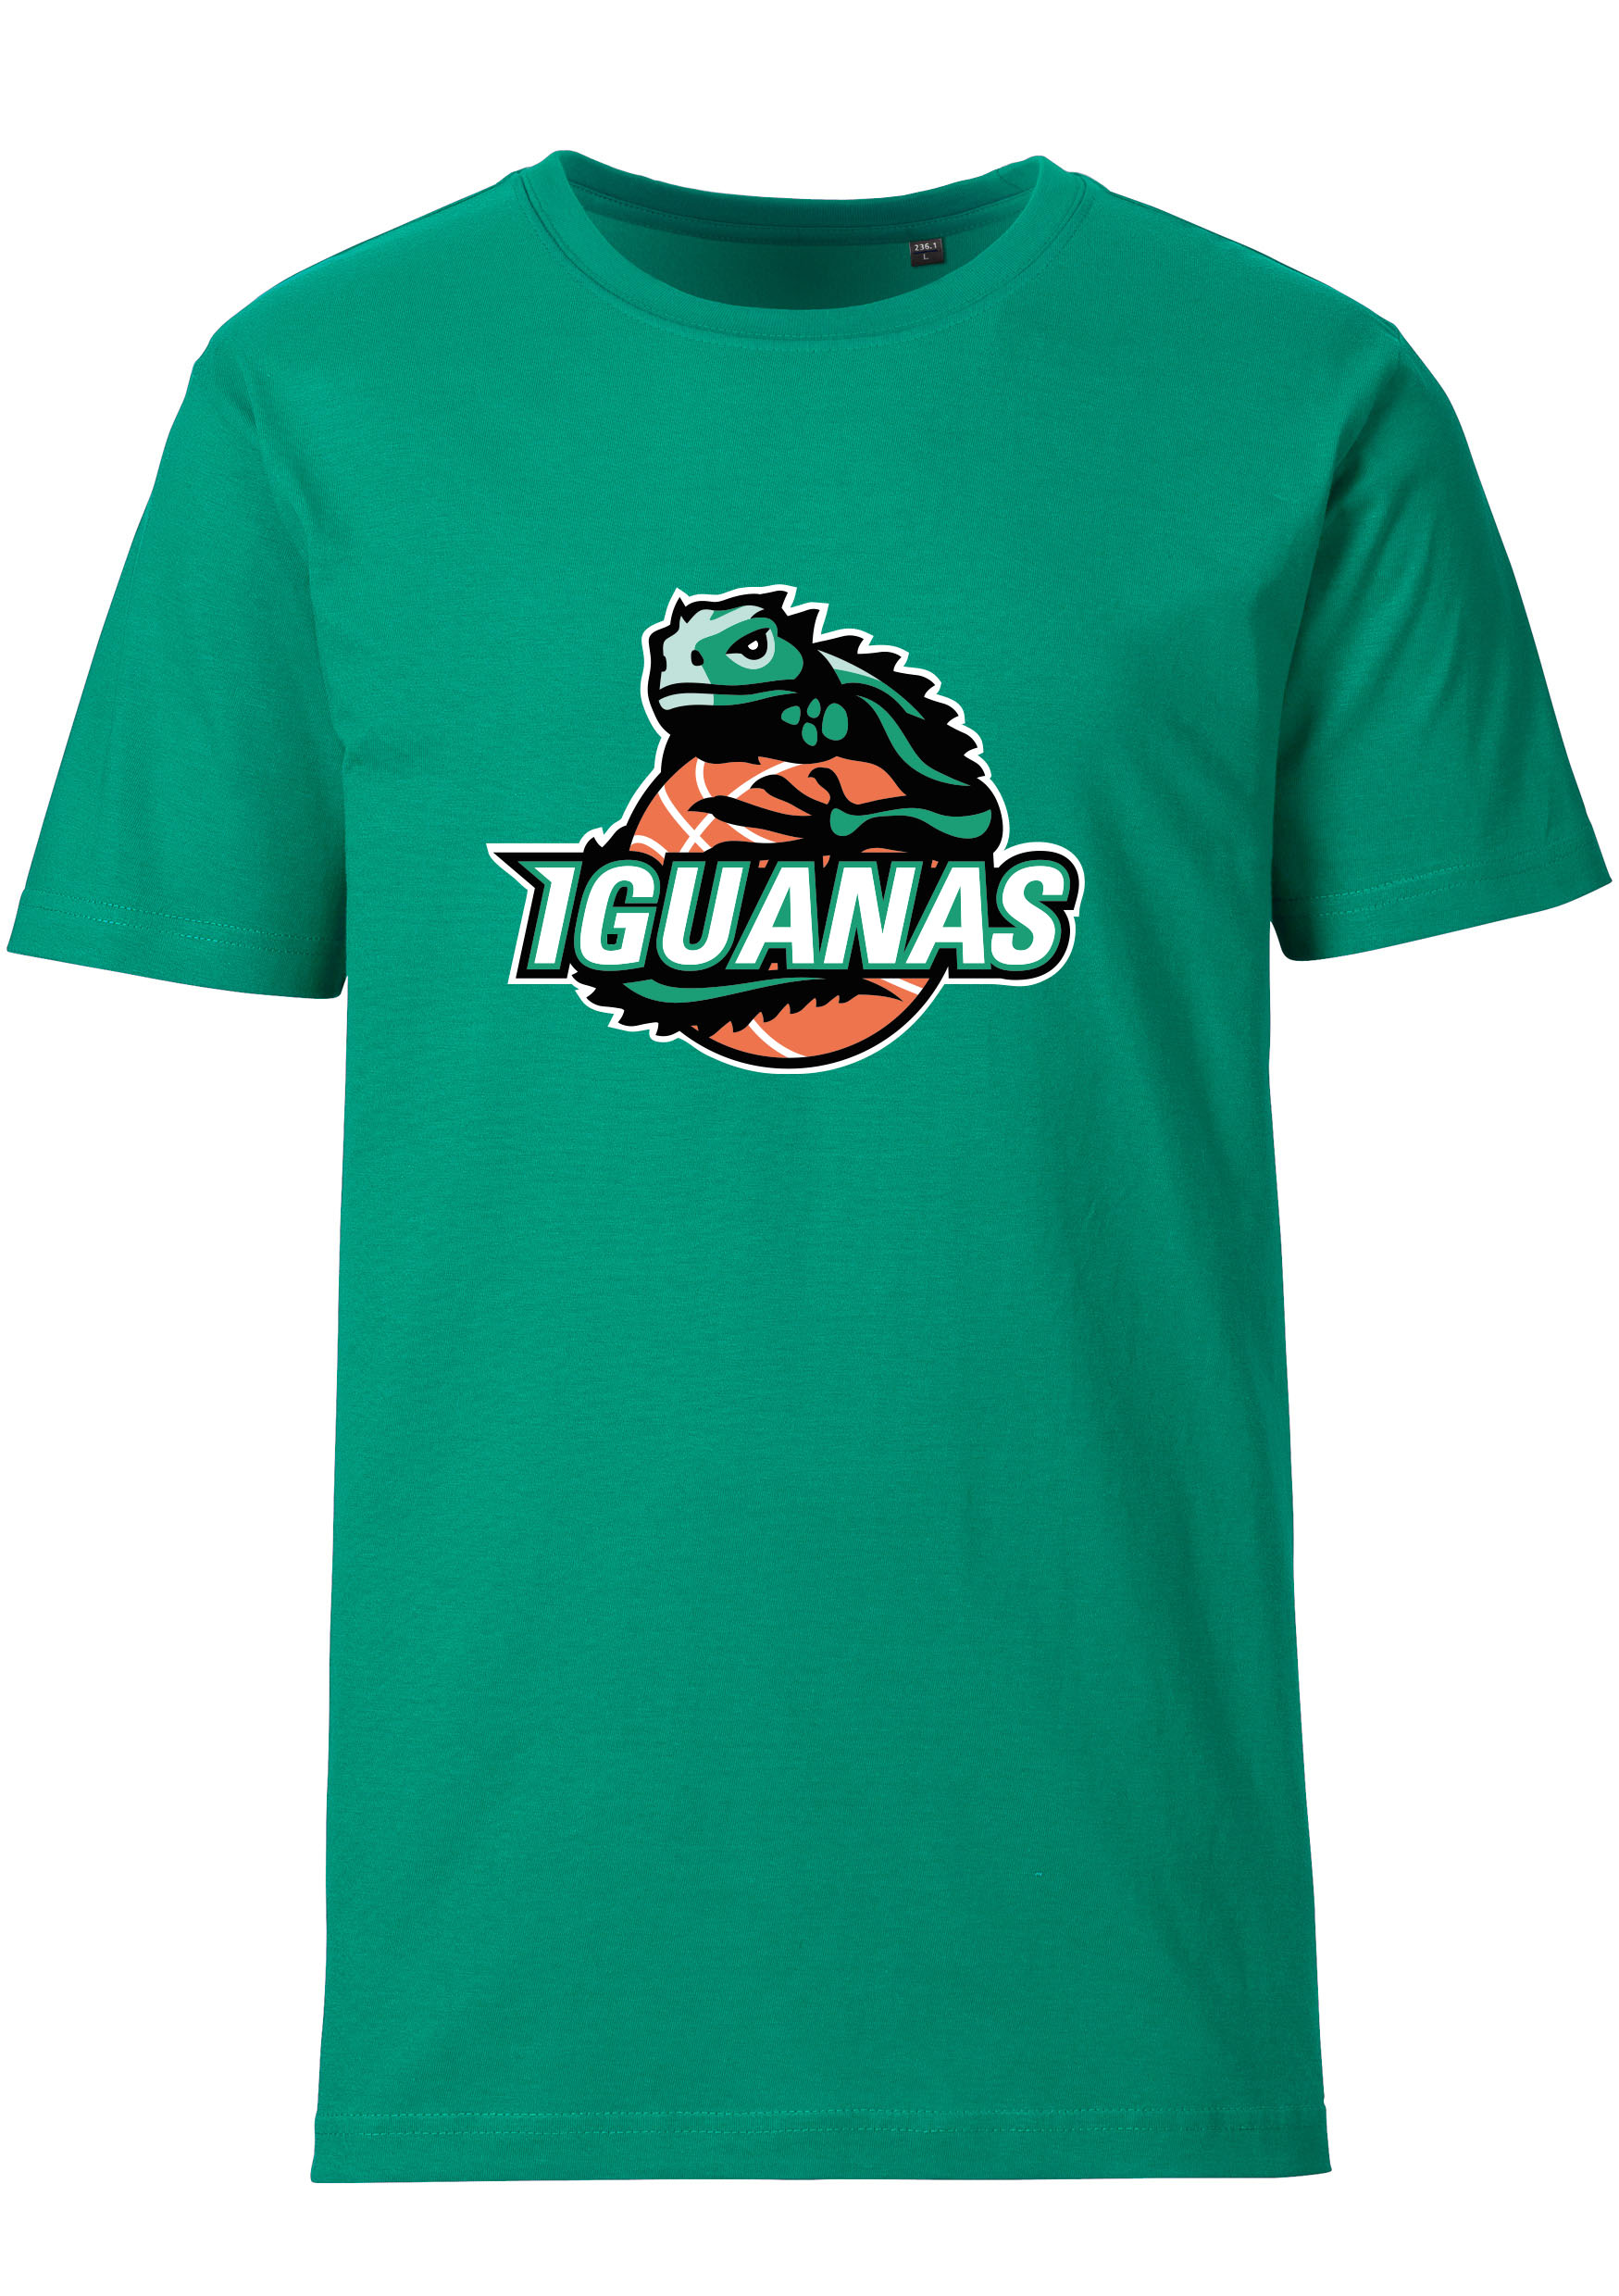 Iguanas T-Shirt Herren Logo groß